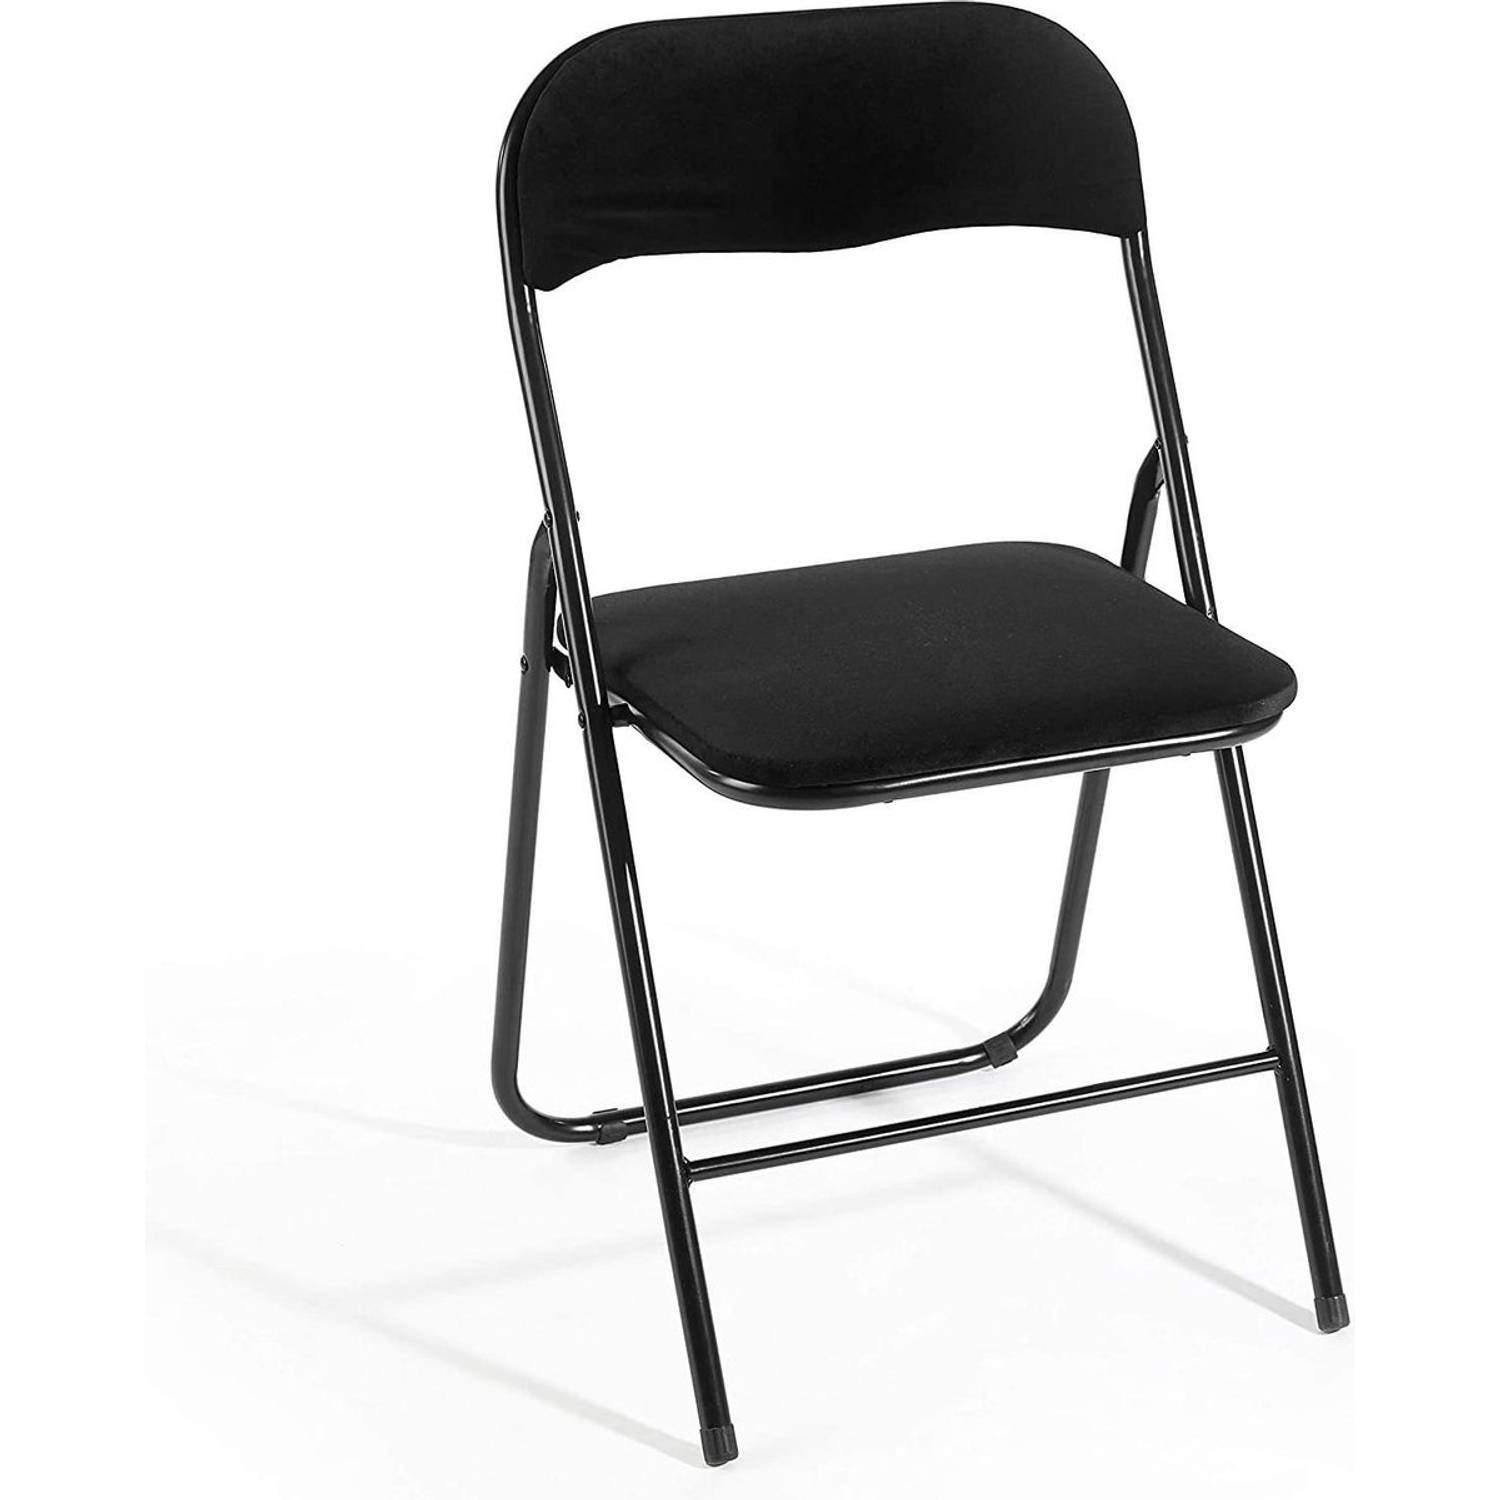 Klapstoel met zithoogte van 43 cm Vouwstoel velvet zitvlak en rug bekleed - stoel - tafelstoel- stoel - tafelstoel -